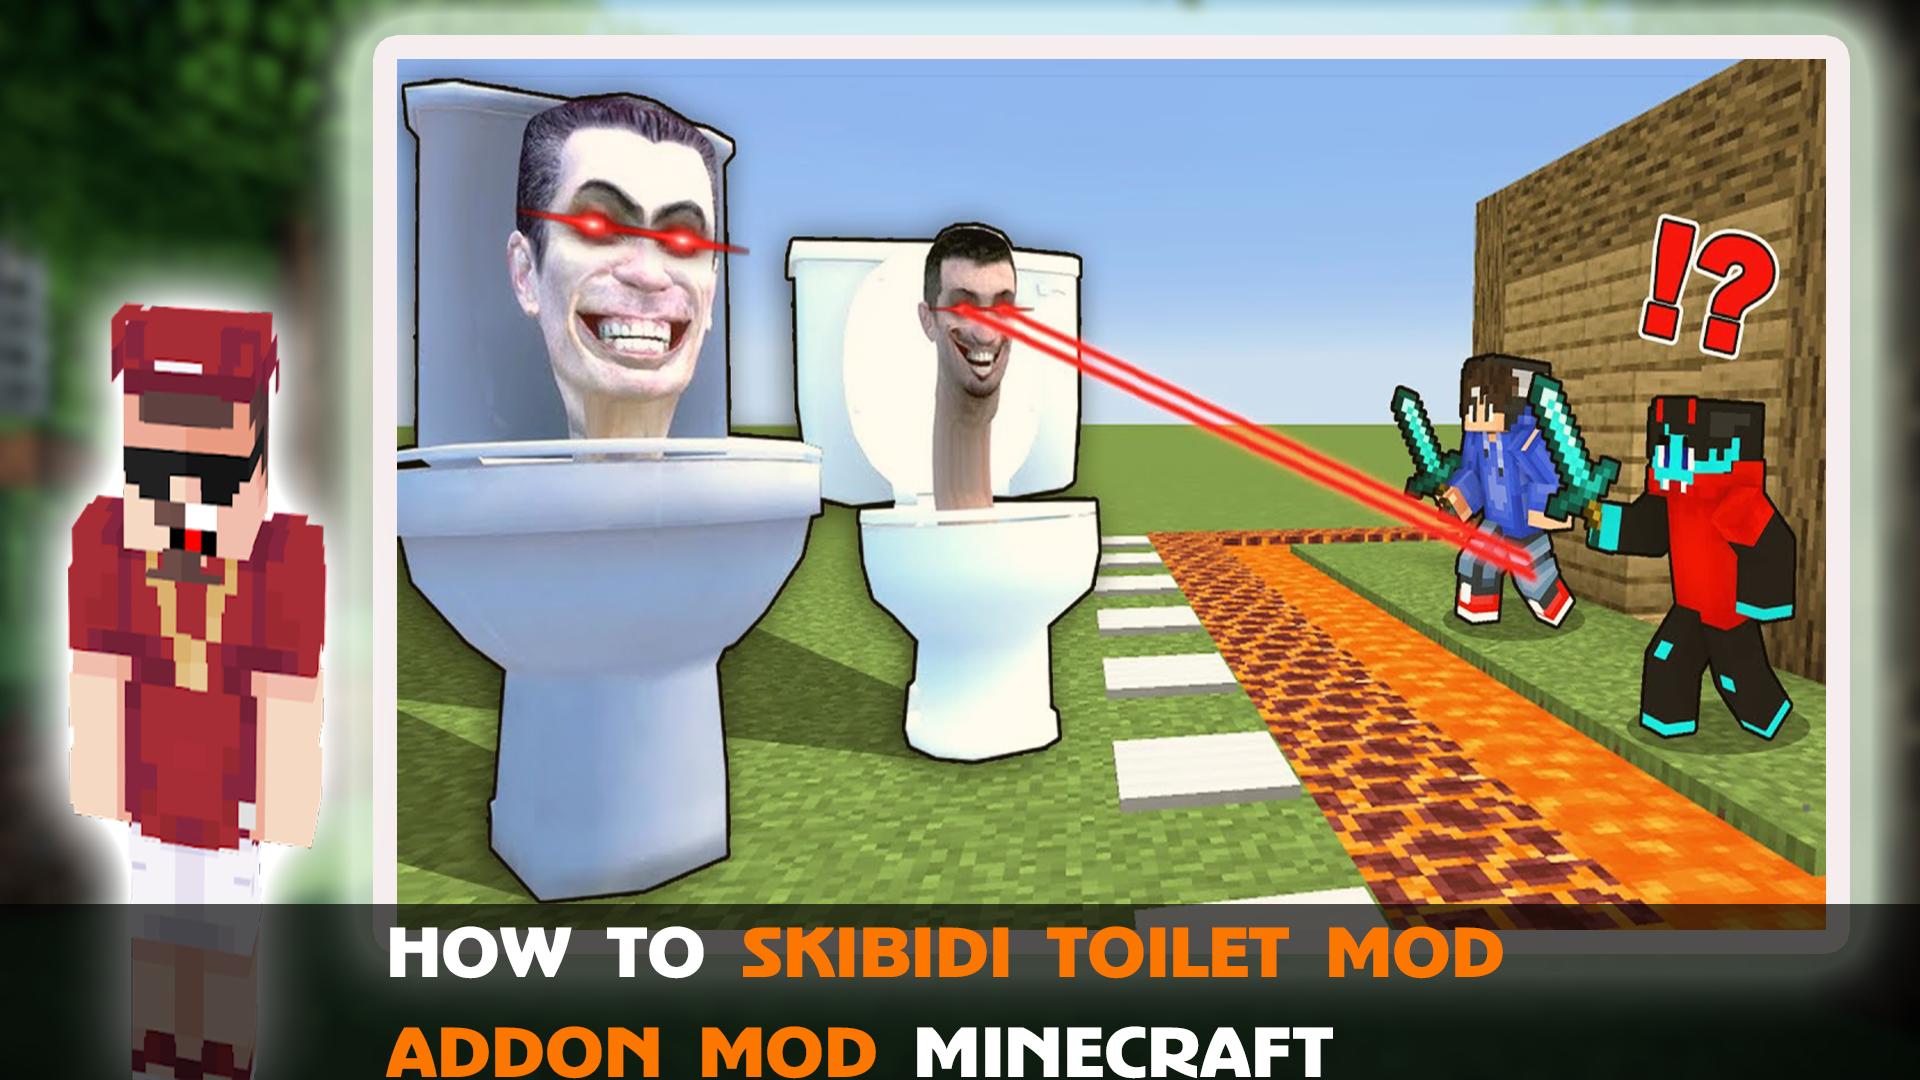 Skibidi toilet mod v 19.1. Мод на скибиди туалет в майнкрафт. Скин скибиди туалет для майнкрафт.